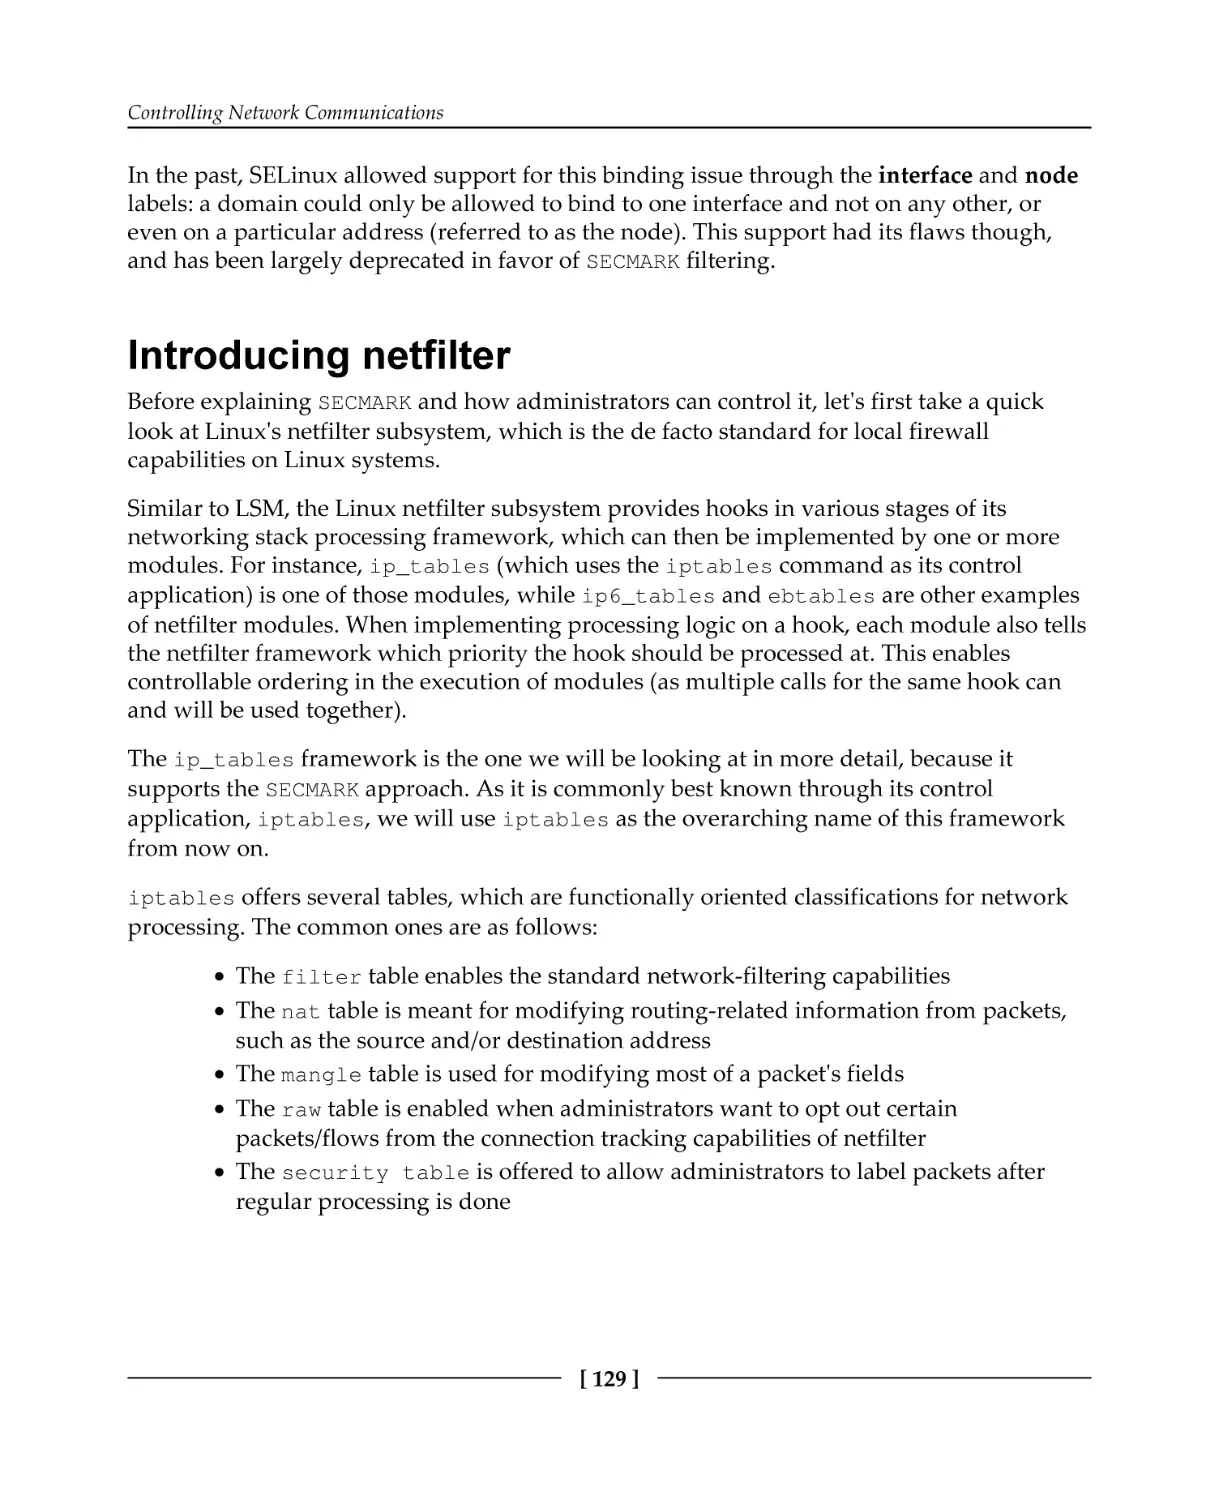 Introducing netfilter